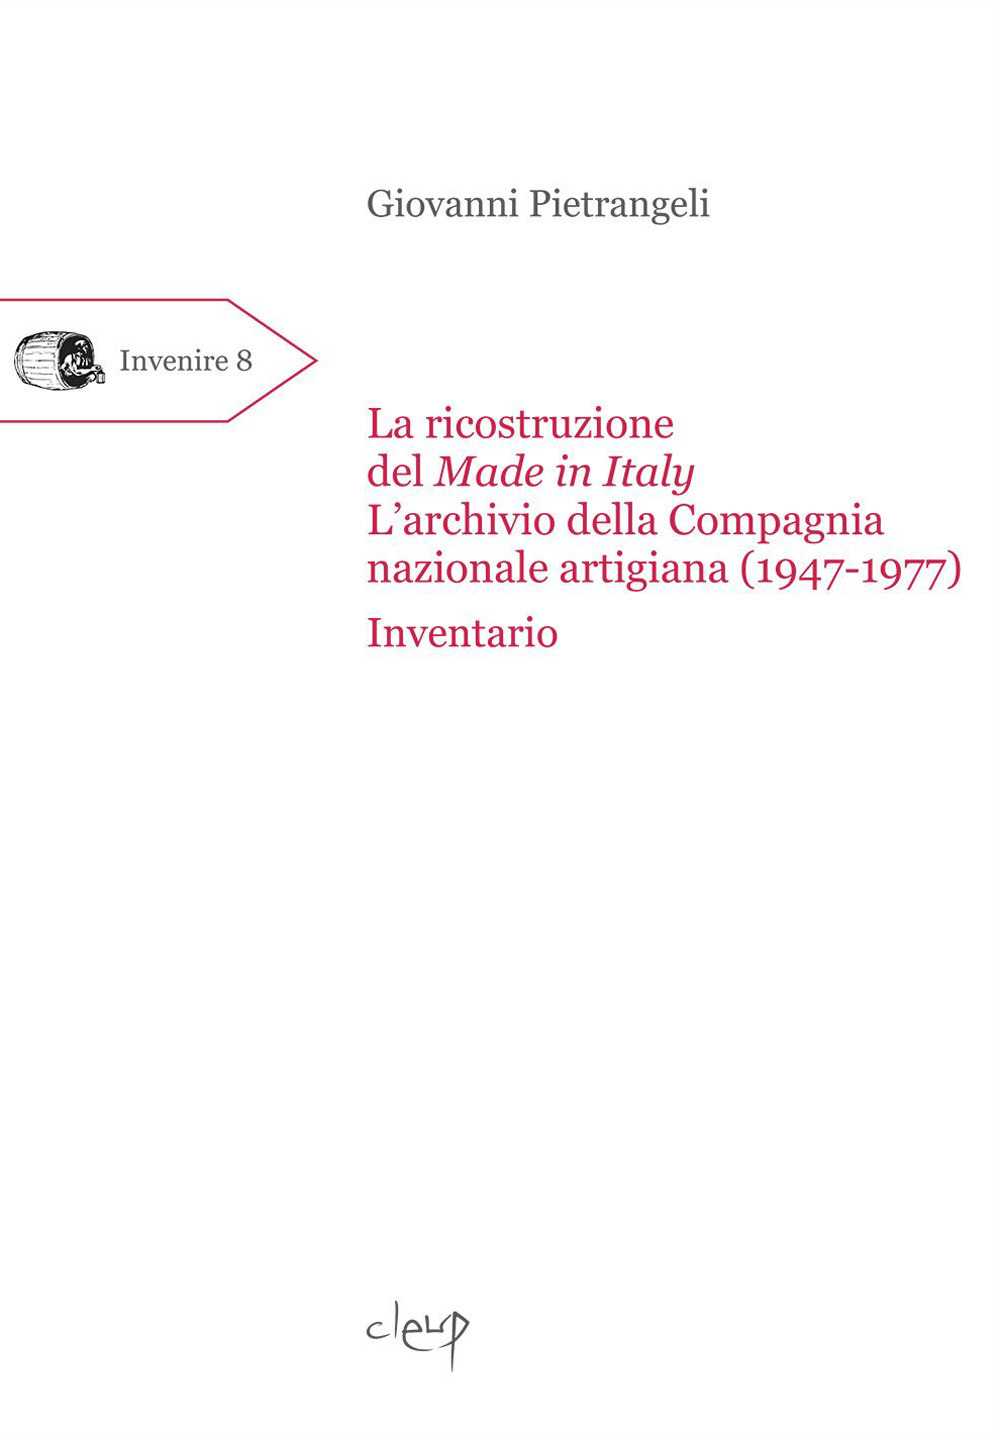 La ricostruzione del Made in Italy. L'archivio della Compagnia nazionale artigiana (1947-1977). Inventario